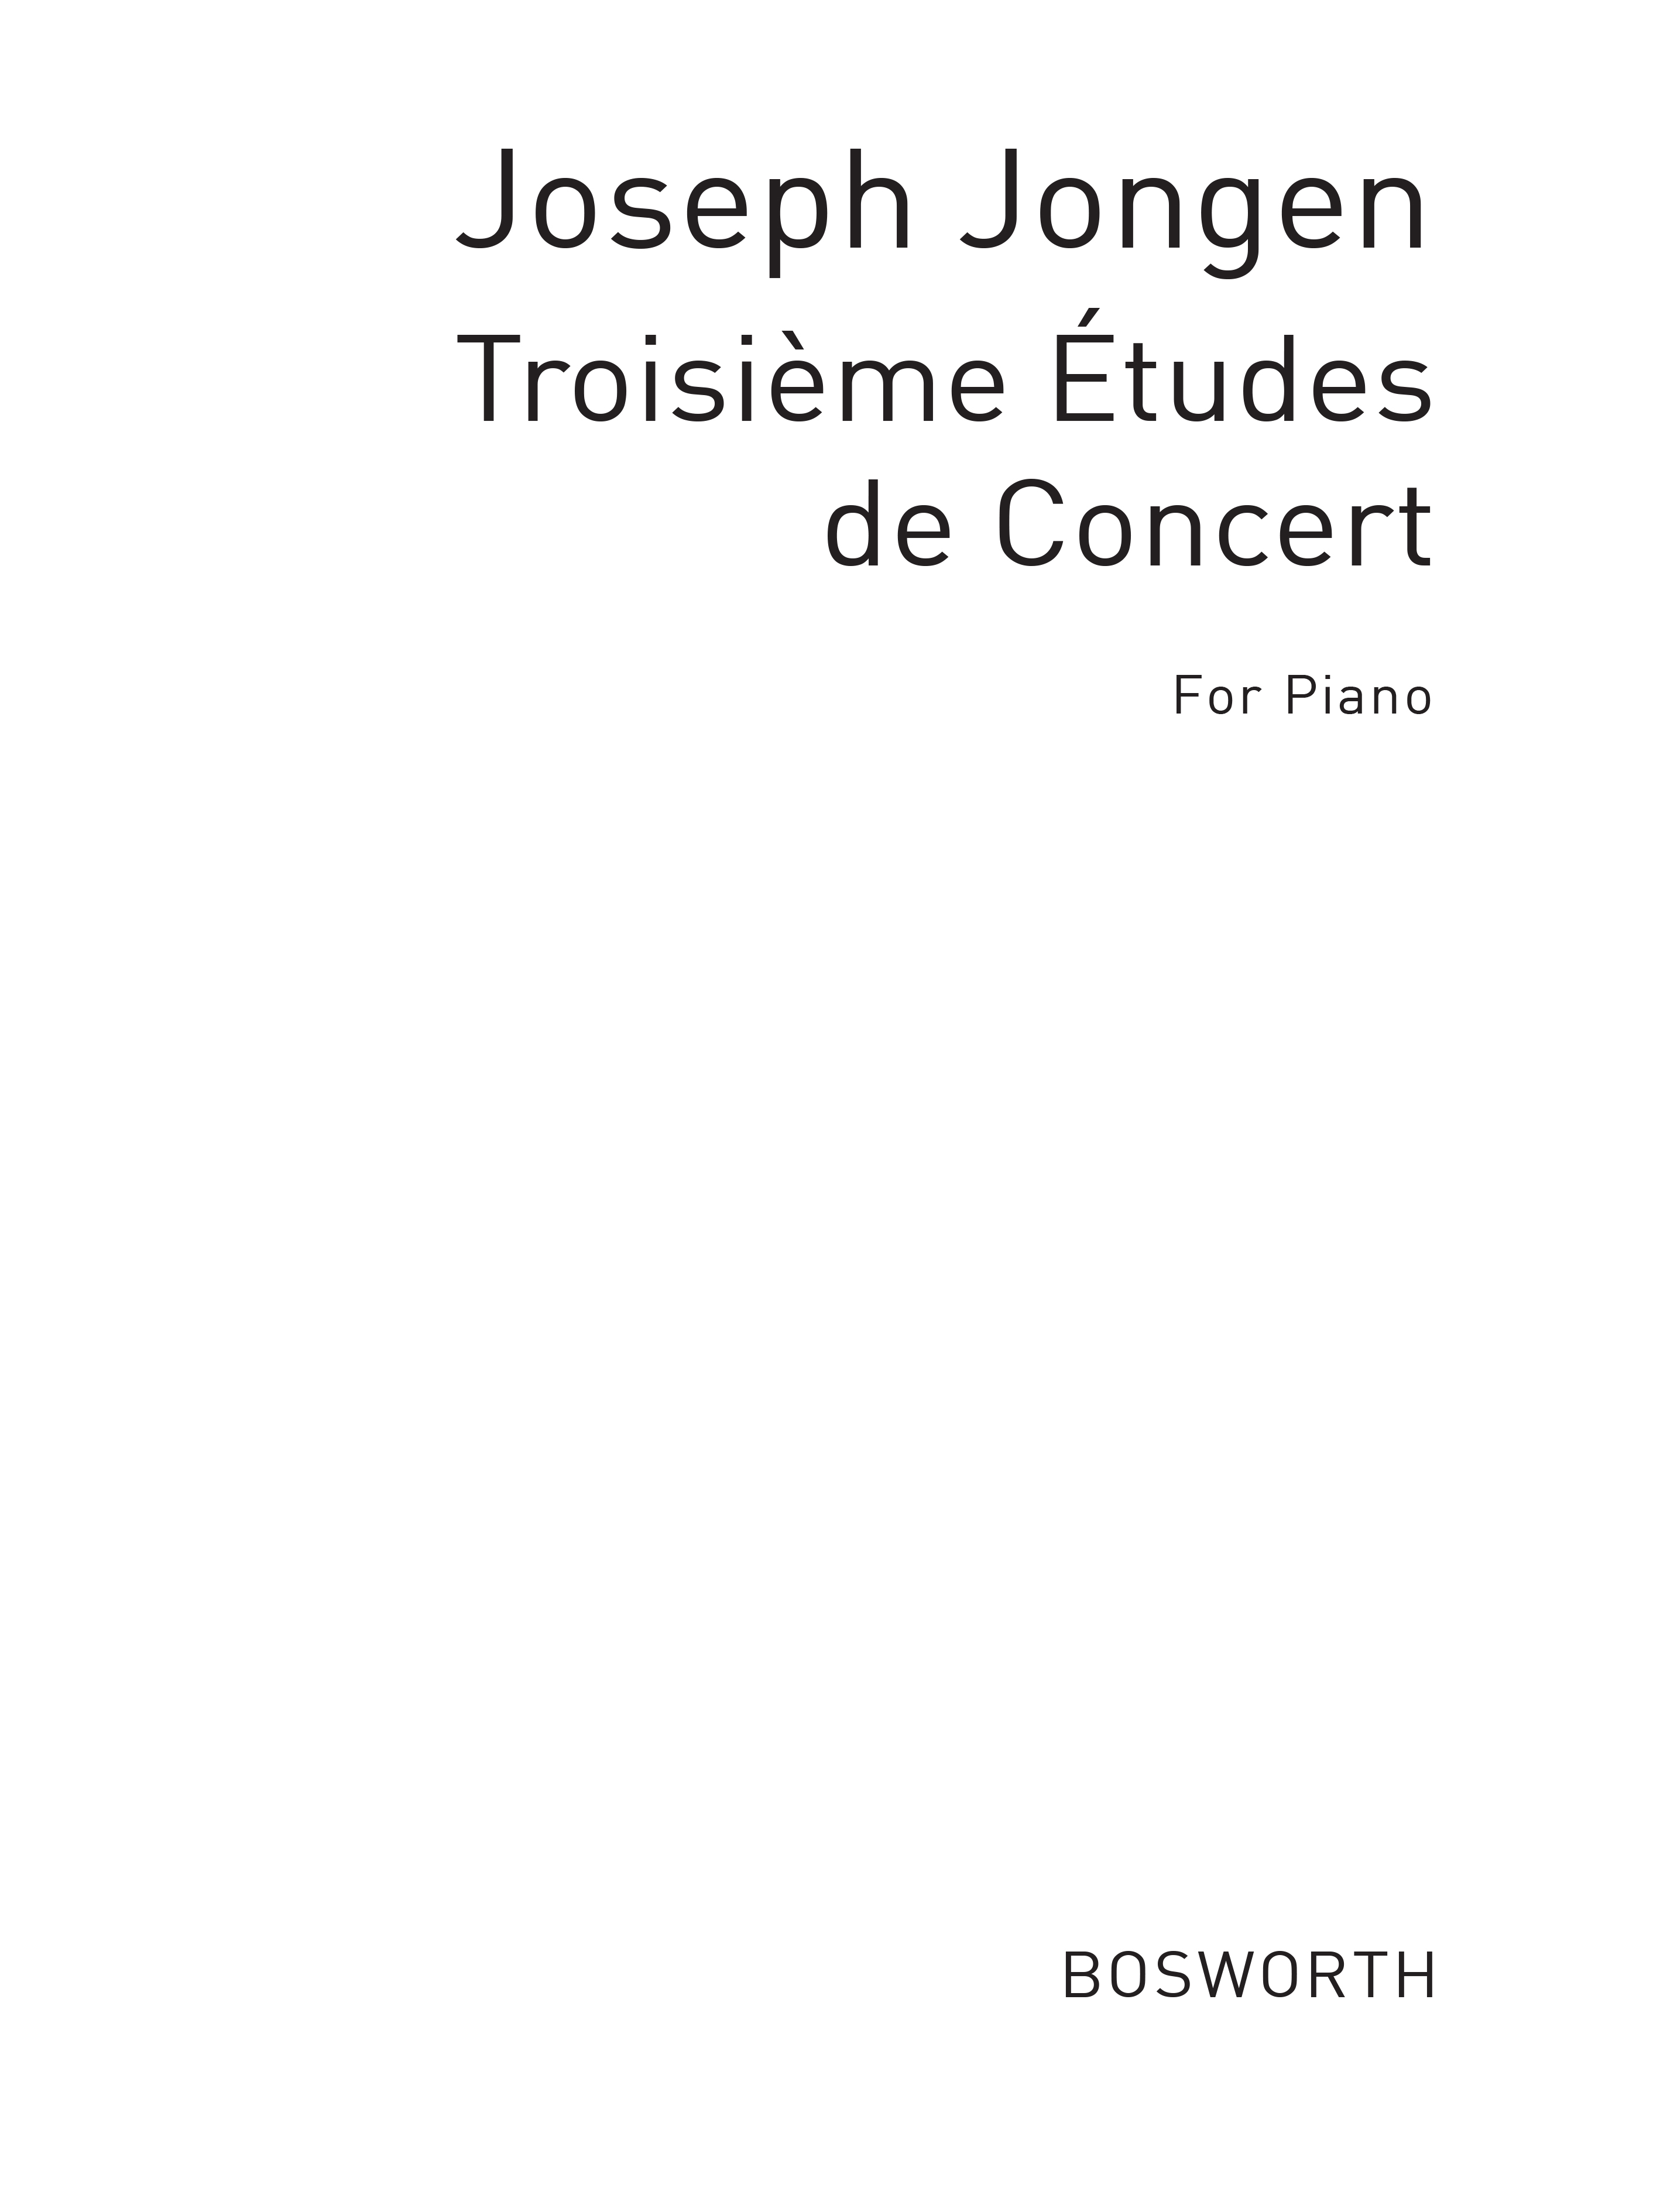 Joseph Jongen: Troisieme Etudes De Concert (Piano): Piano: Instrumental Album